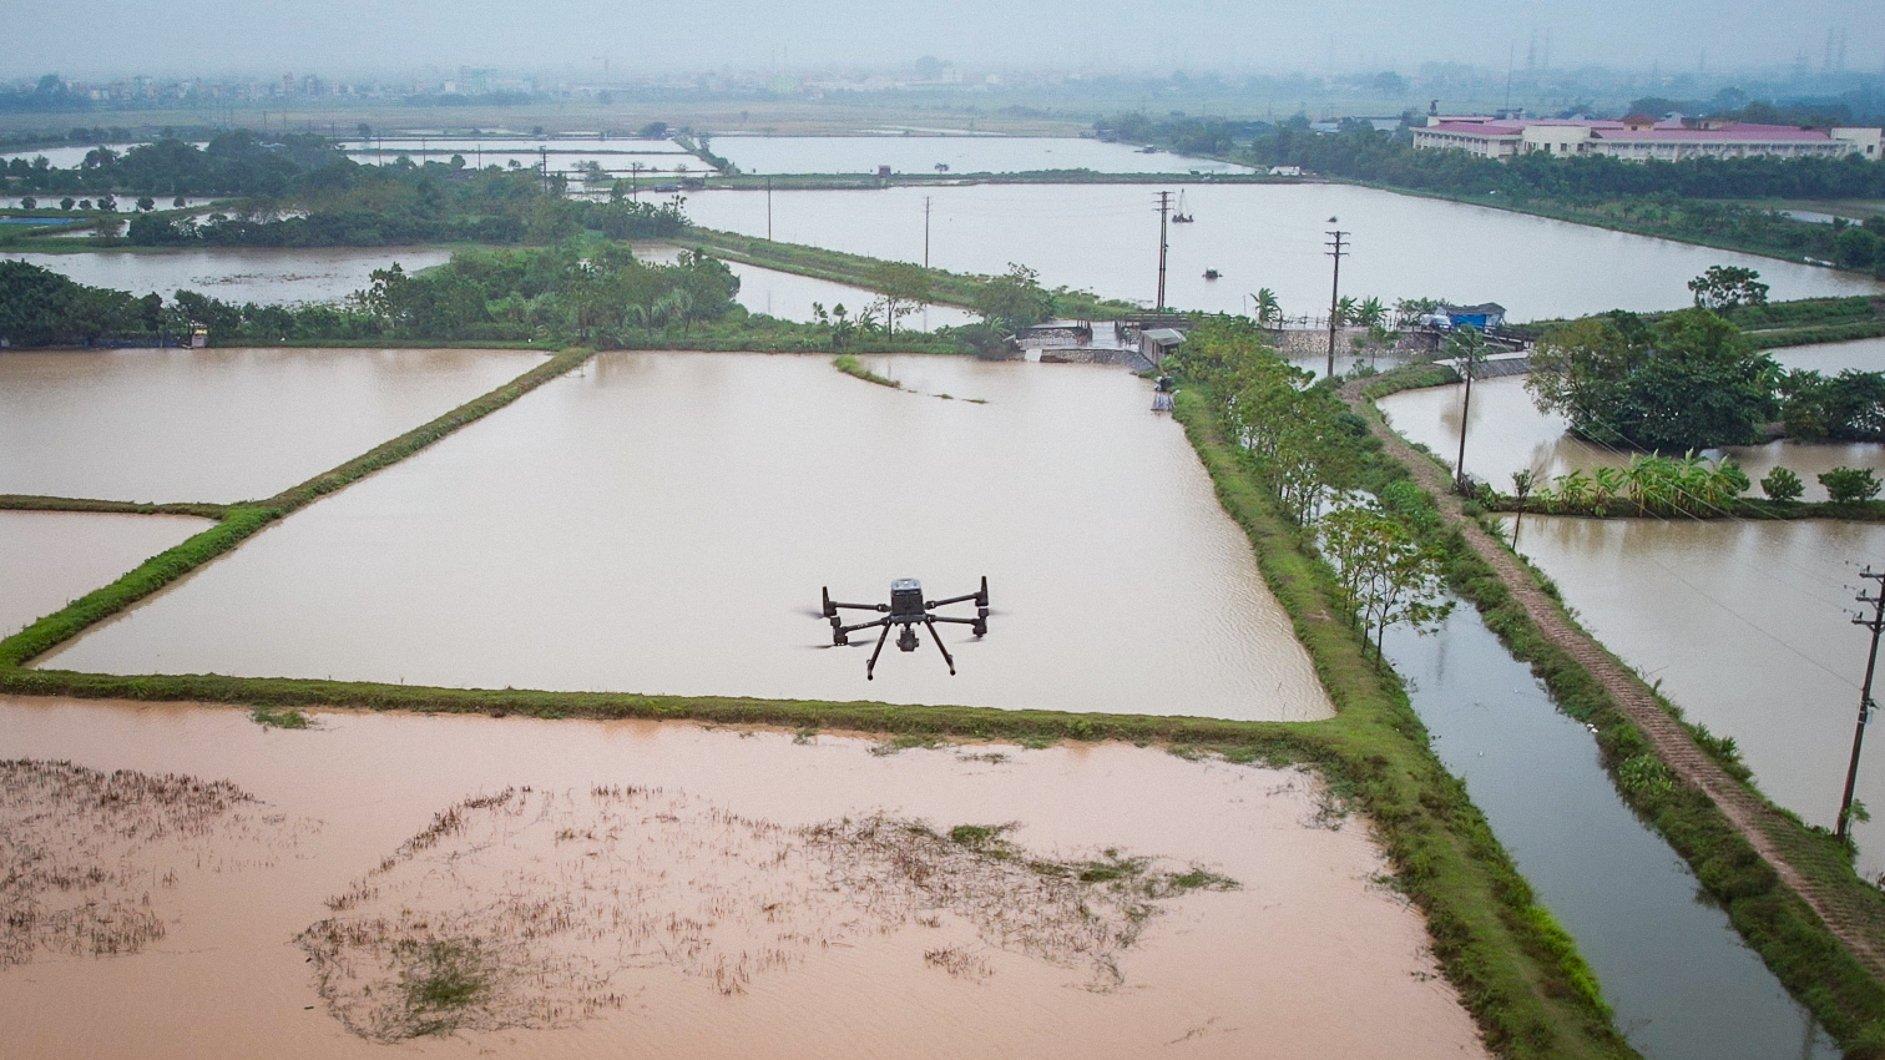 Cận cảnh flycam chuyên dụng phục vụ khảo sát cắm mốc giới đường vành đai 4 ở Hà Nội - Ảnh 2.